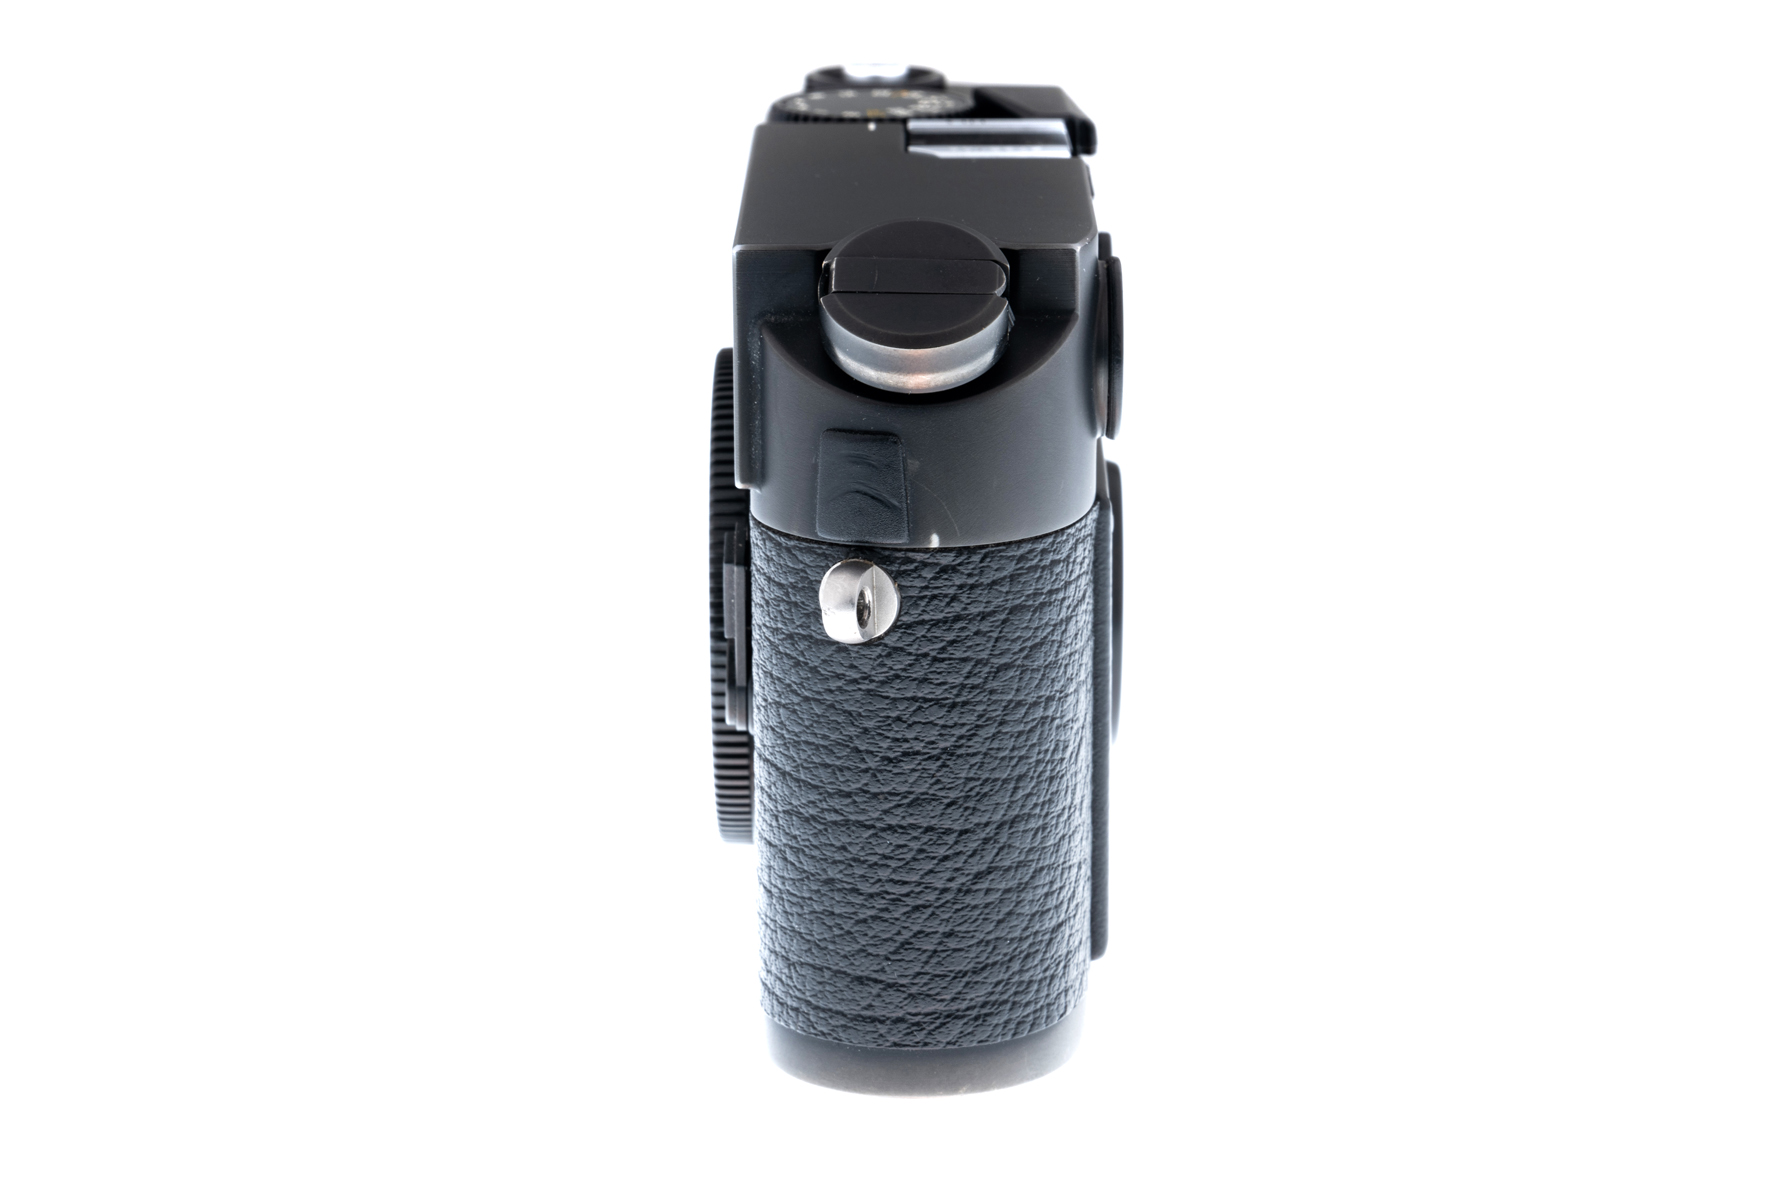 Leica M6 TTL 0,85 schwarz verchromt